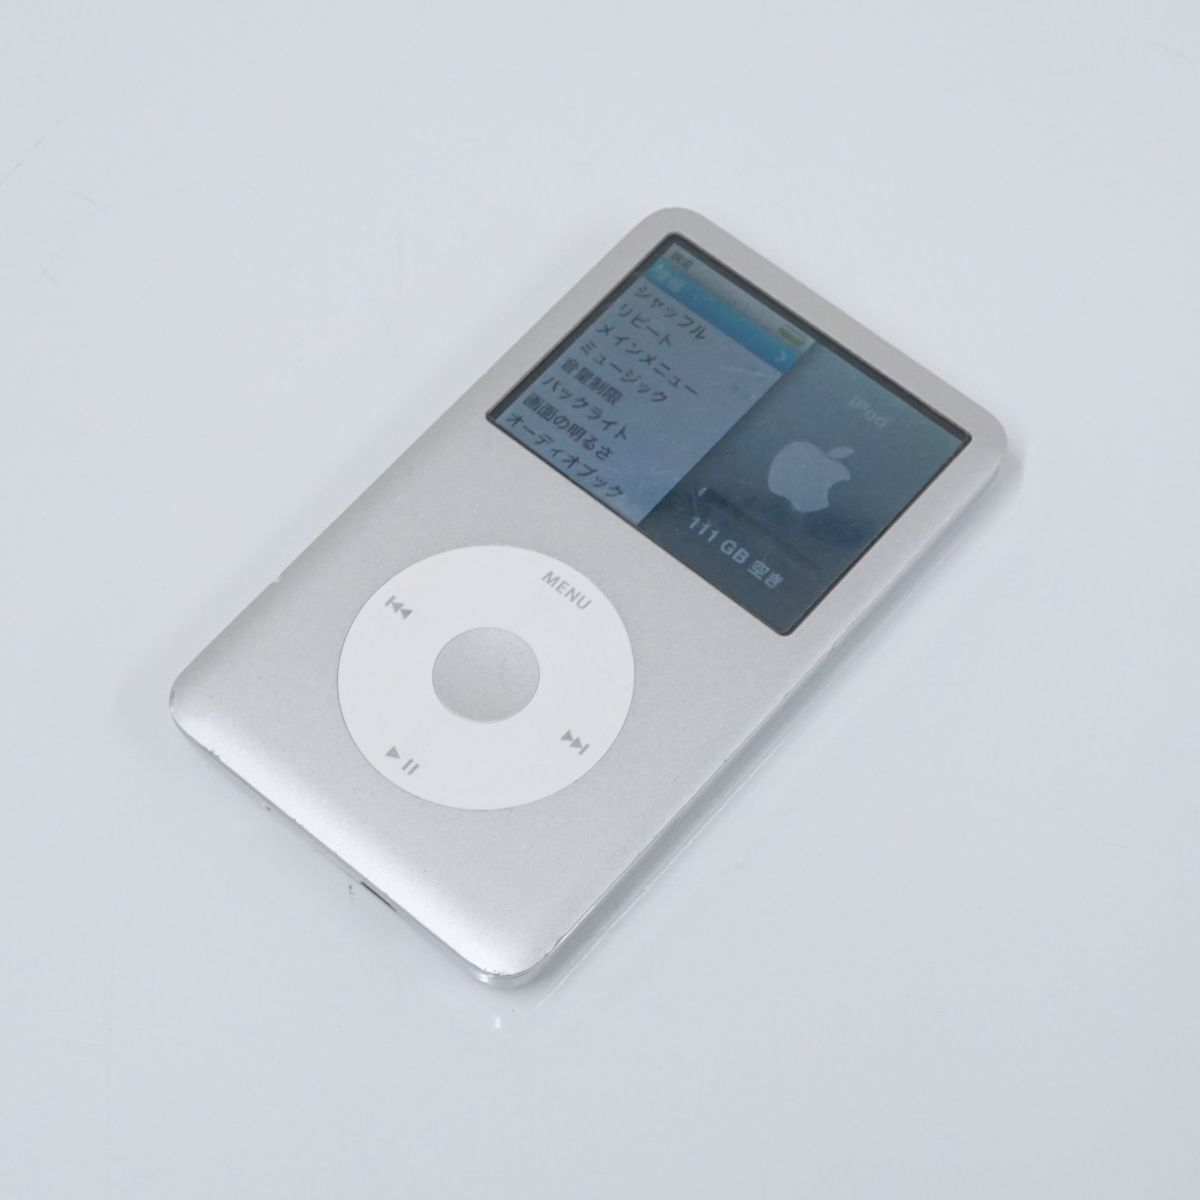 【箱付き】iPod classic アイポットクラシック 120GB シルバー